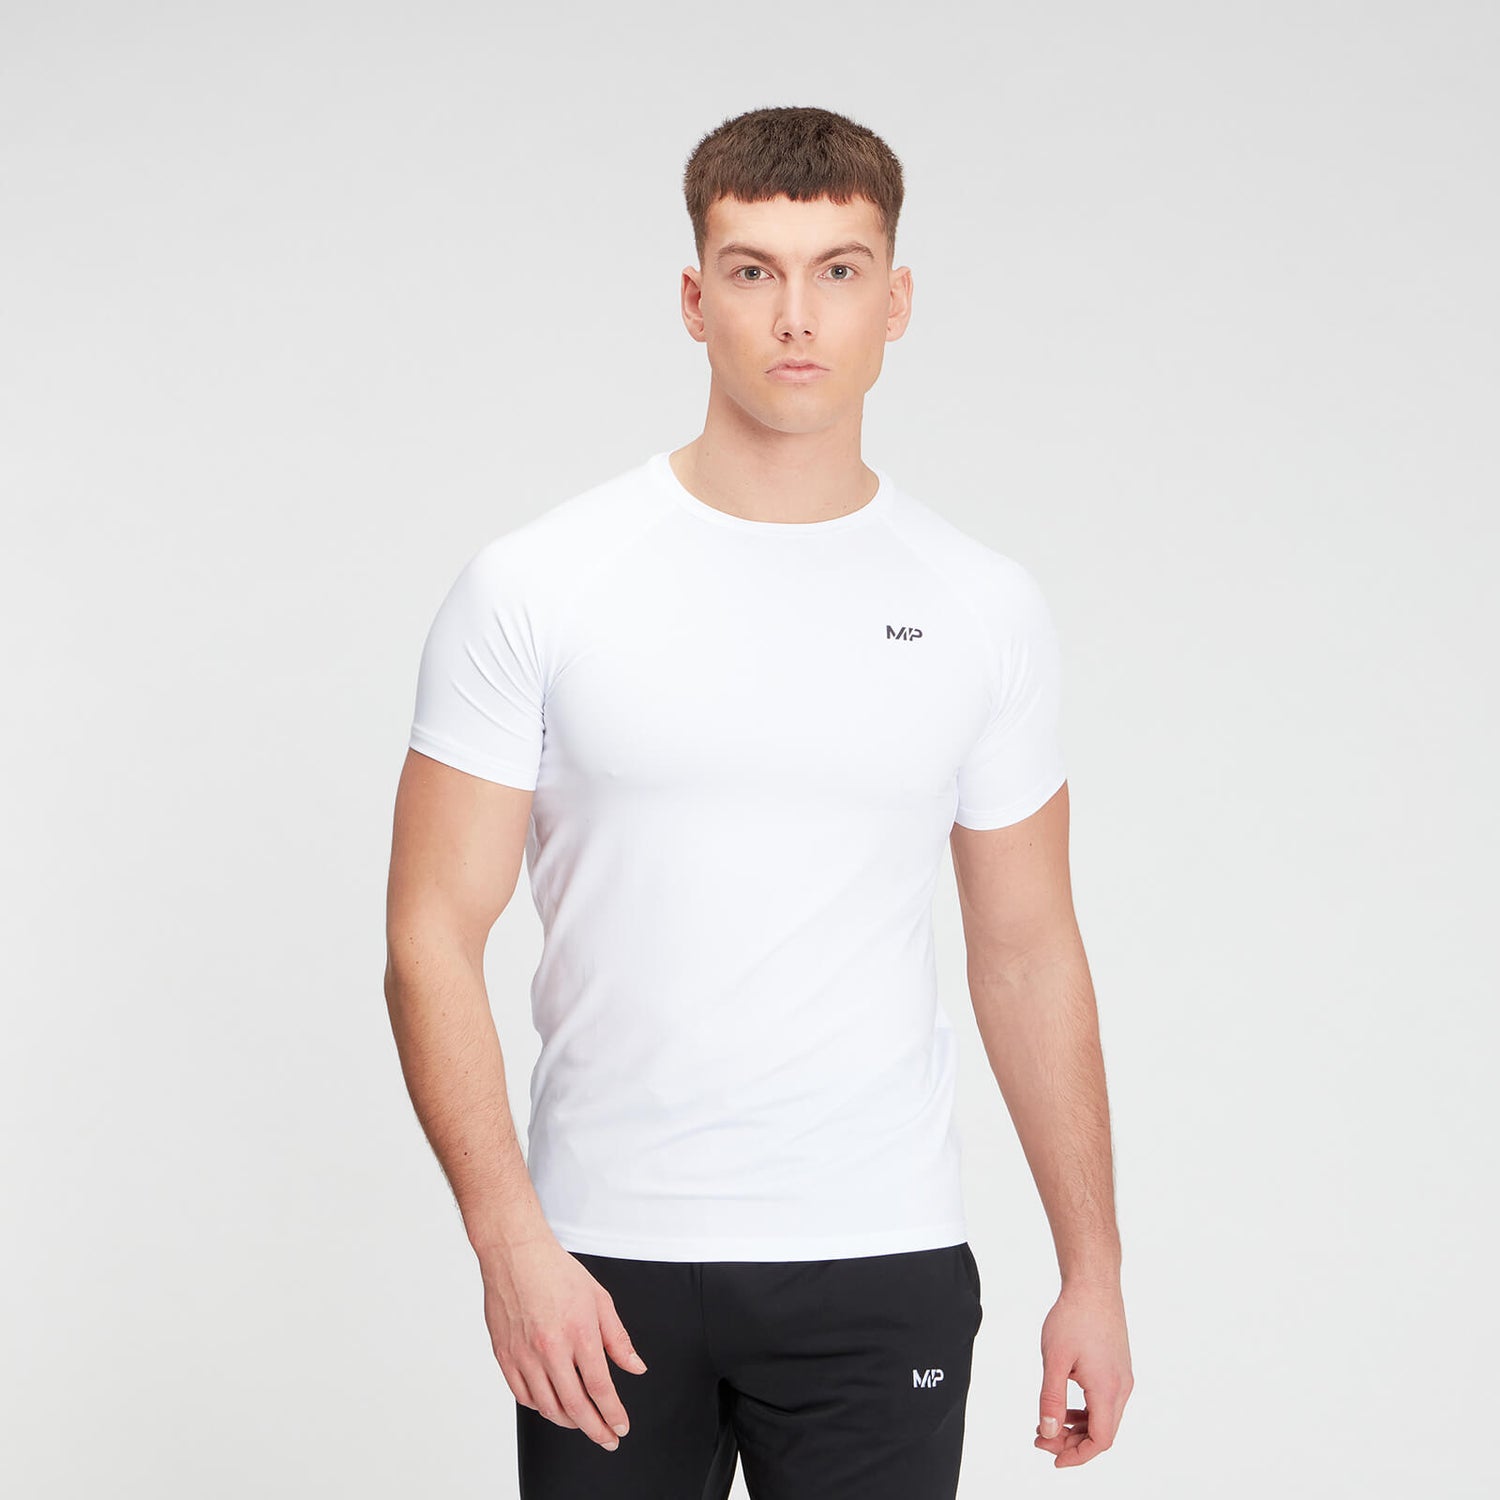 MP pánské tréninkové tričko s krátkým rukávem – Bílé - XS